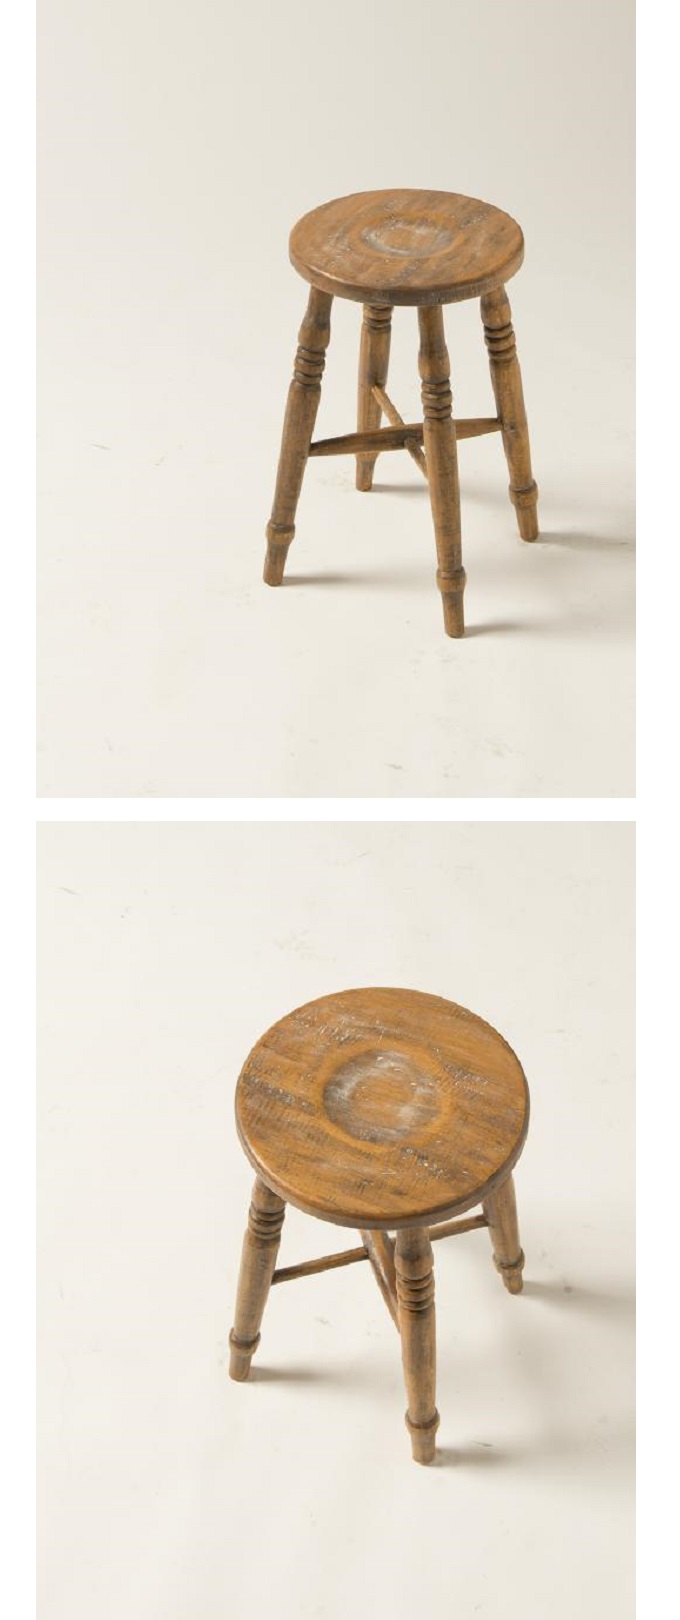 スツール アンティーク家具 おしゃれ 木製 ナチュラル 椅子 チェア 